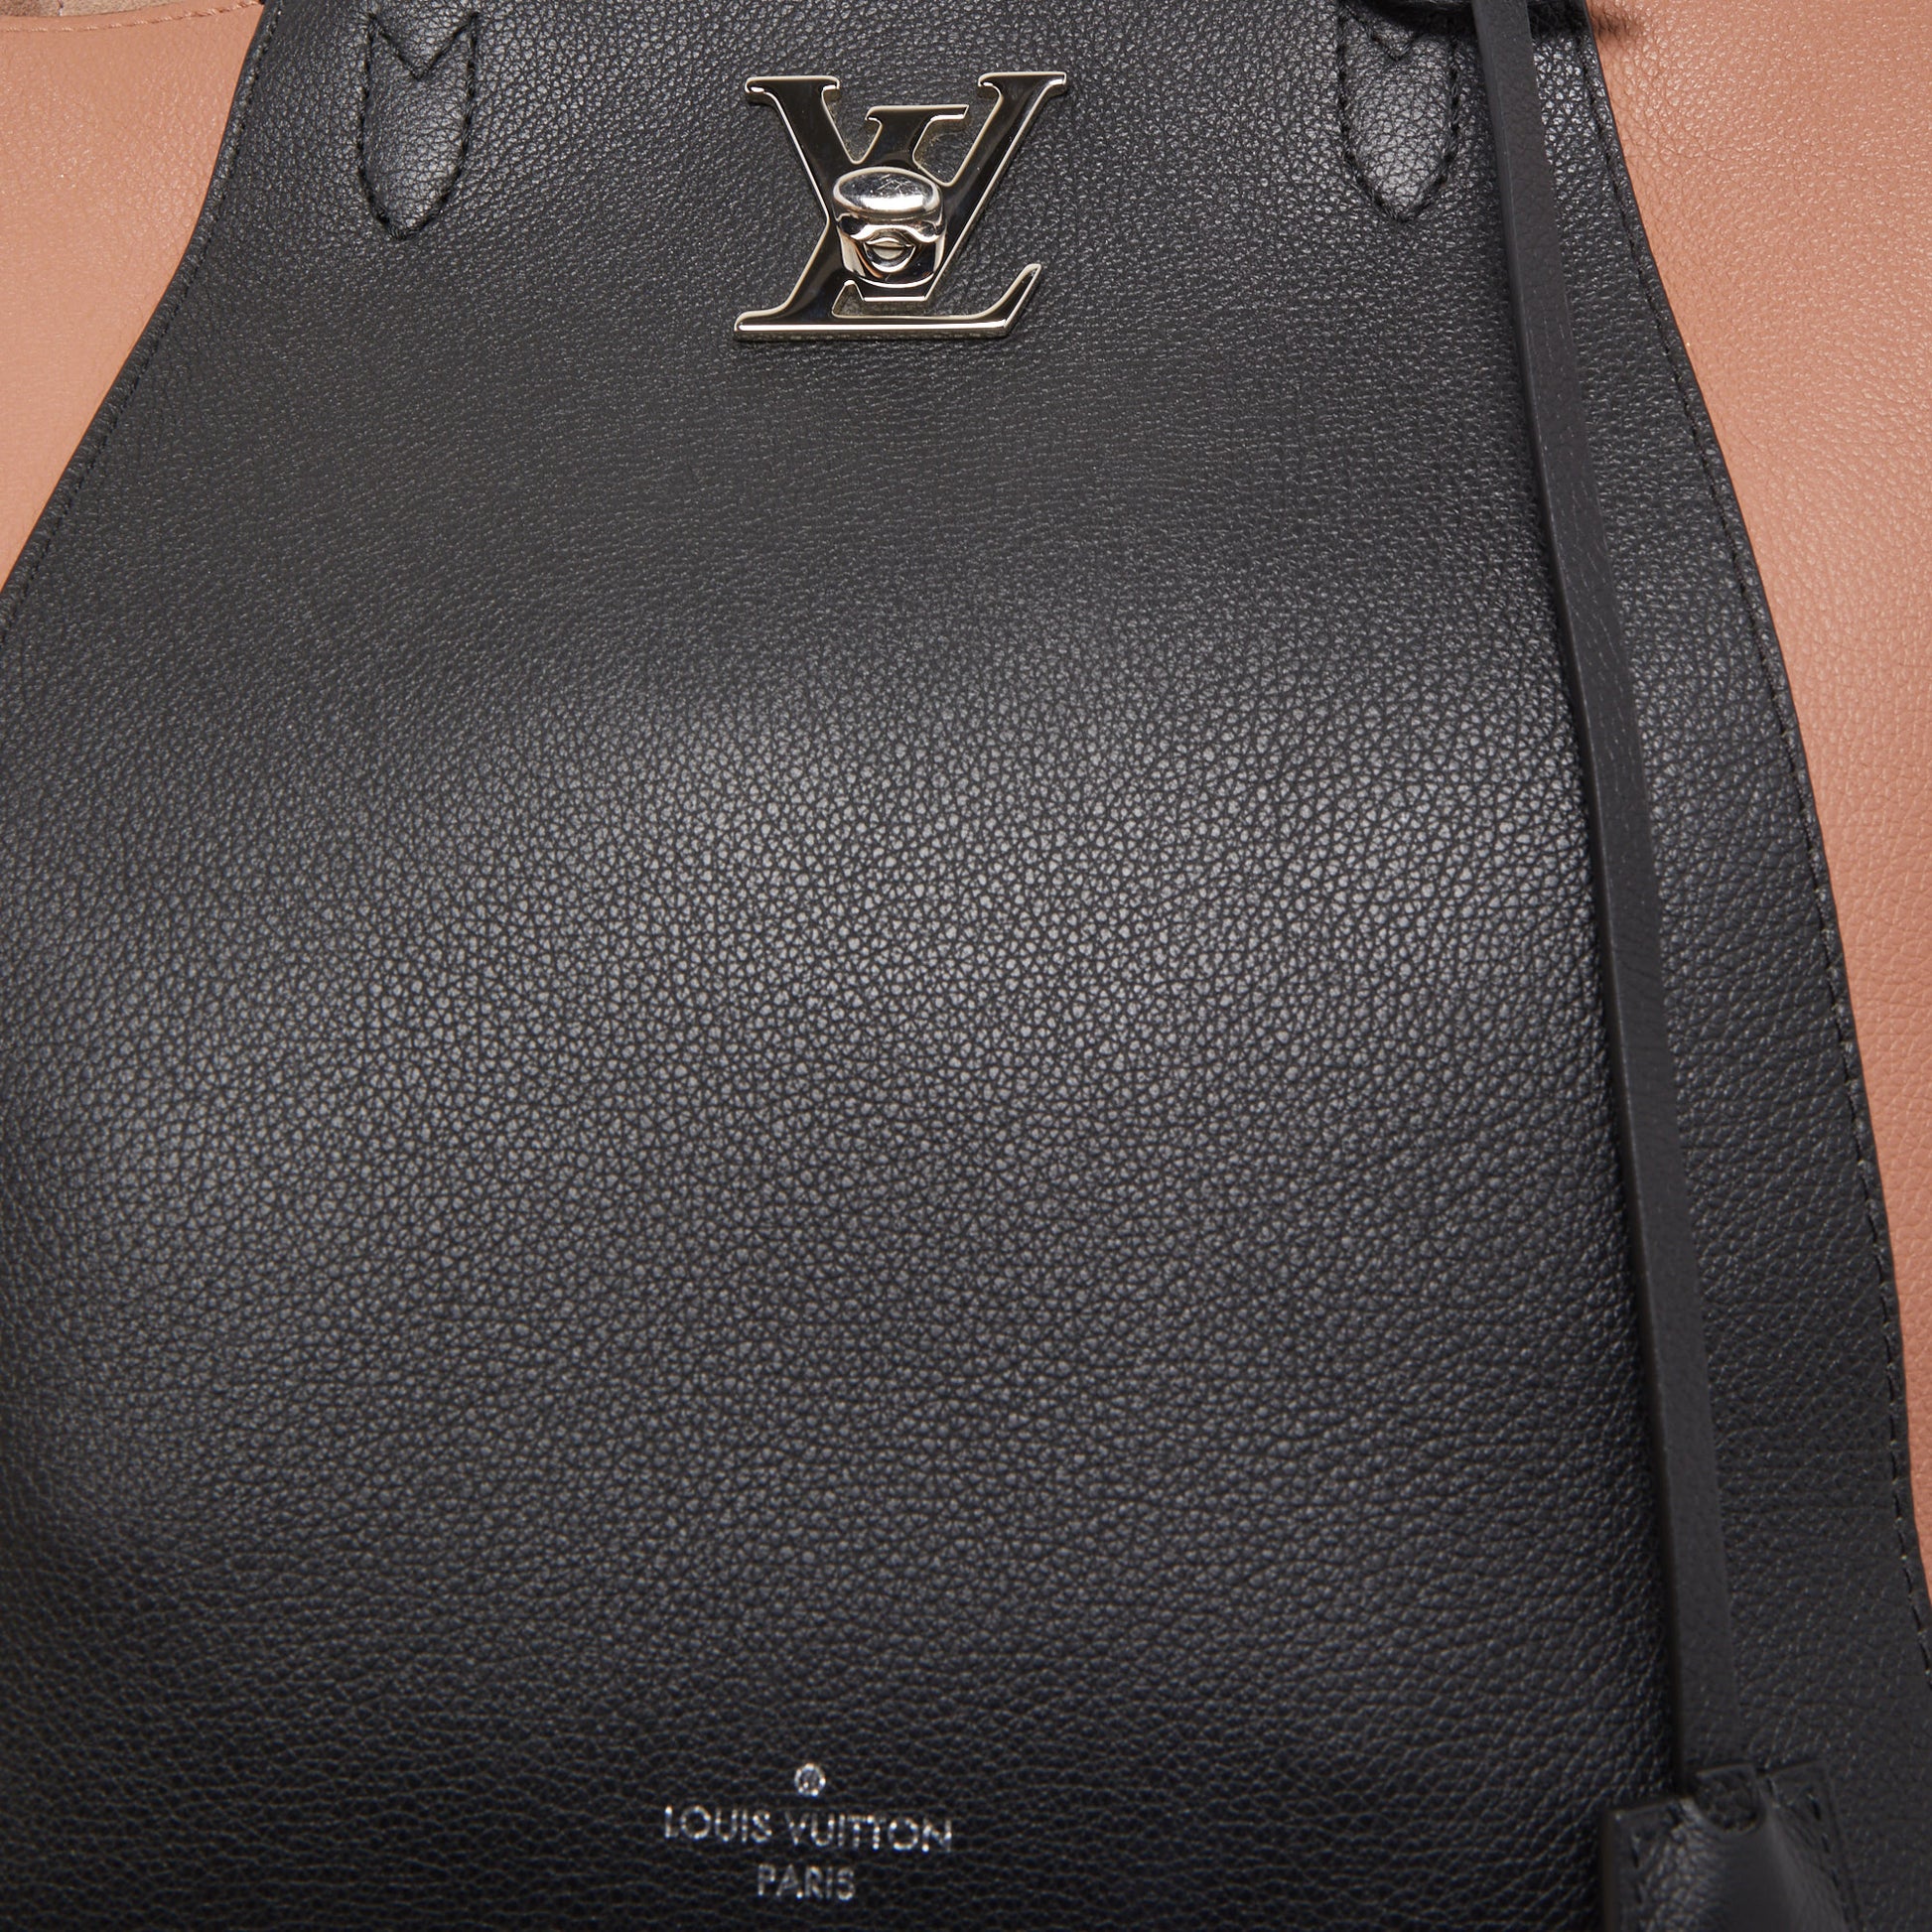 Louis Vuitton Rose/Black Leather Lockme Cabas Bag Louis Vuitton